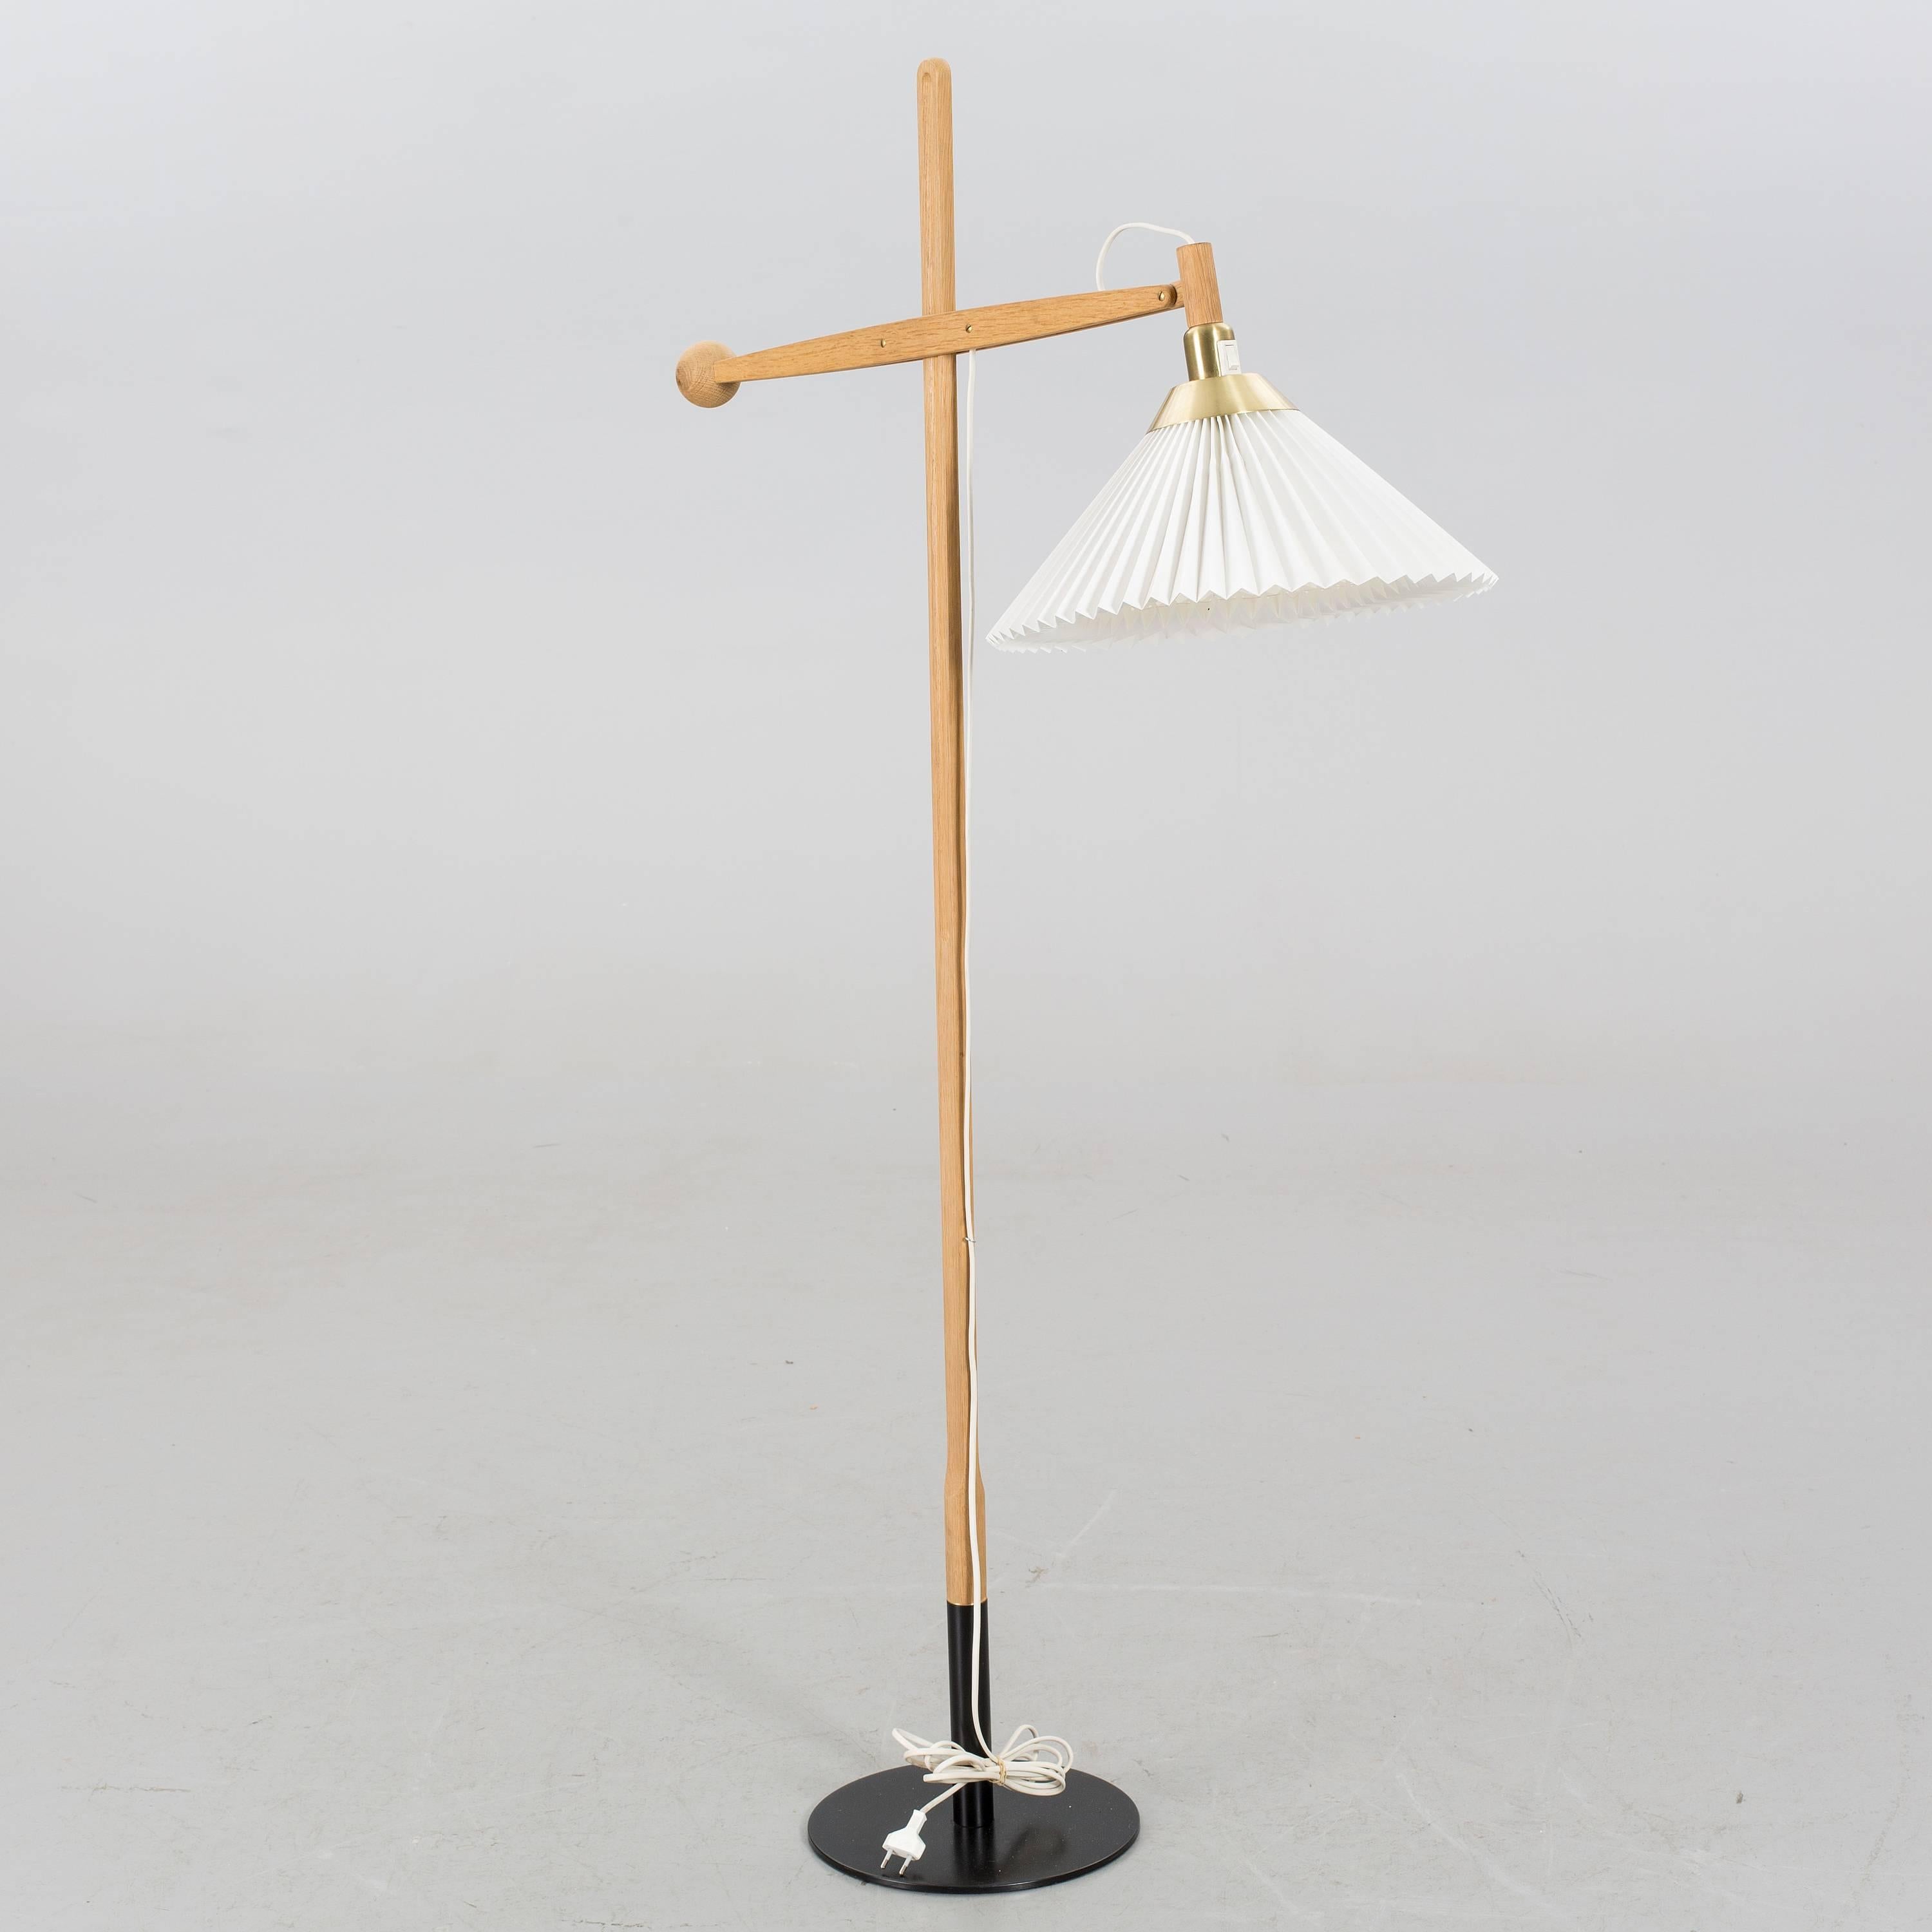 Rare floor lamp model 325 designed by Vilhelm Wohlert. Produced by Le Klint in Denmark.